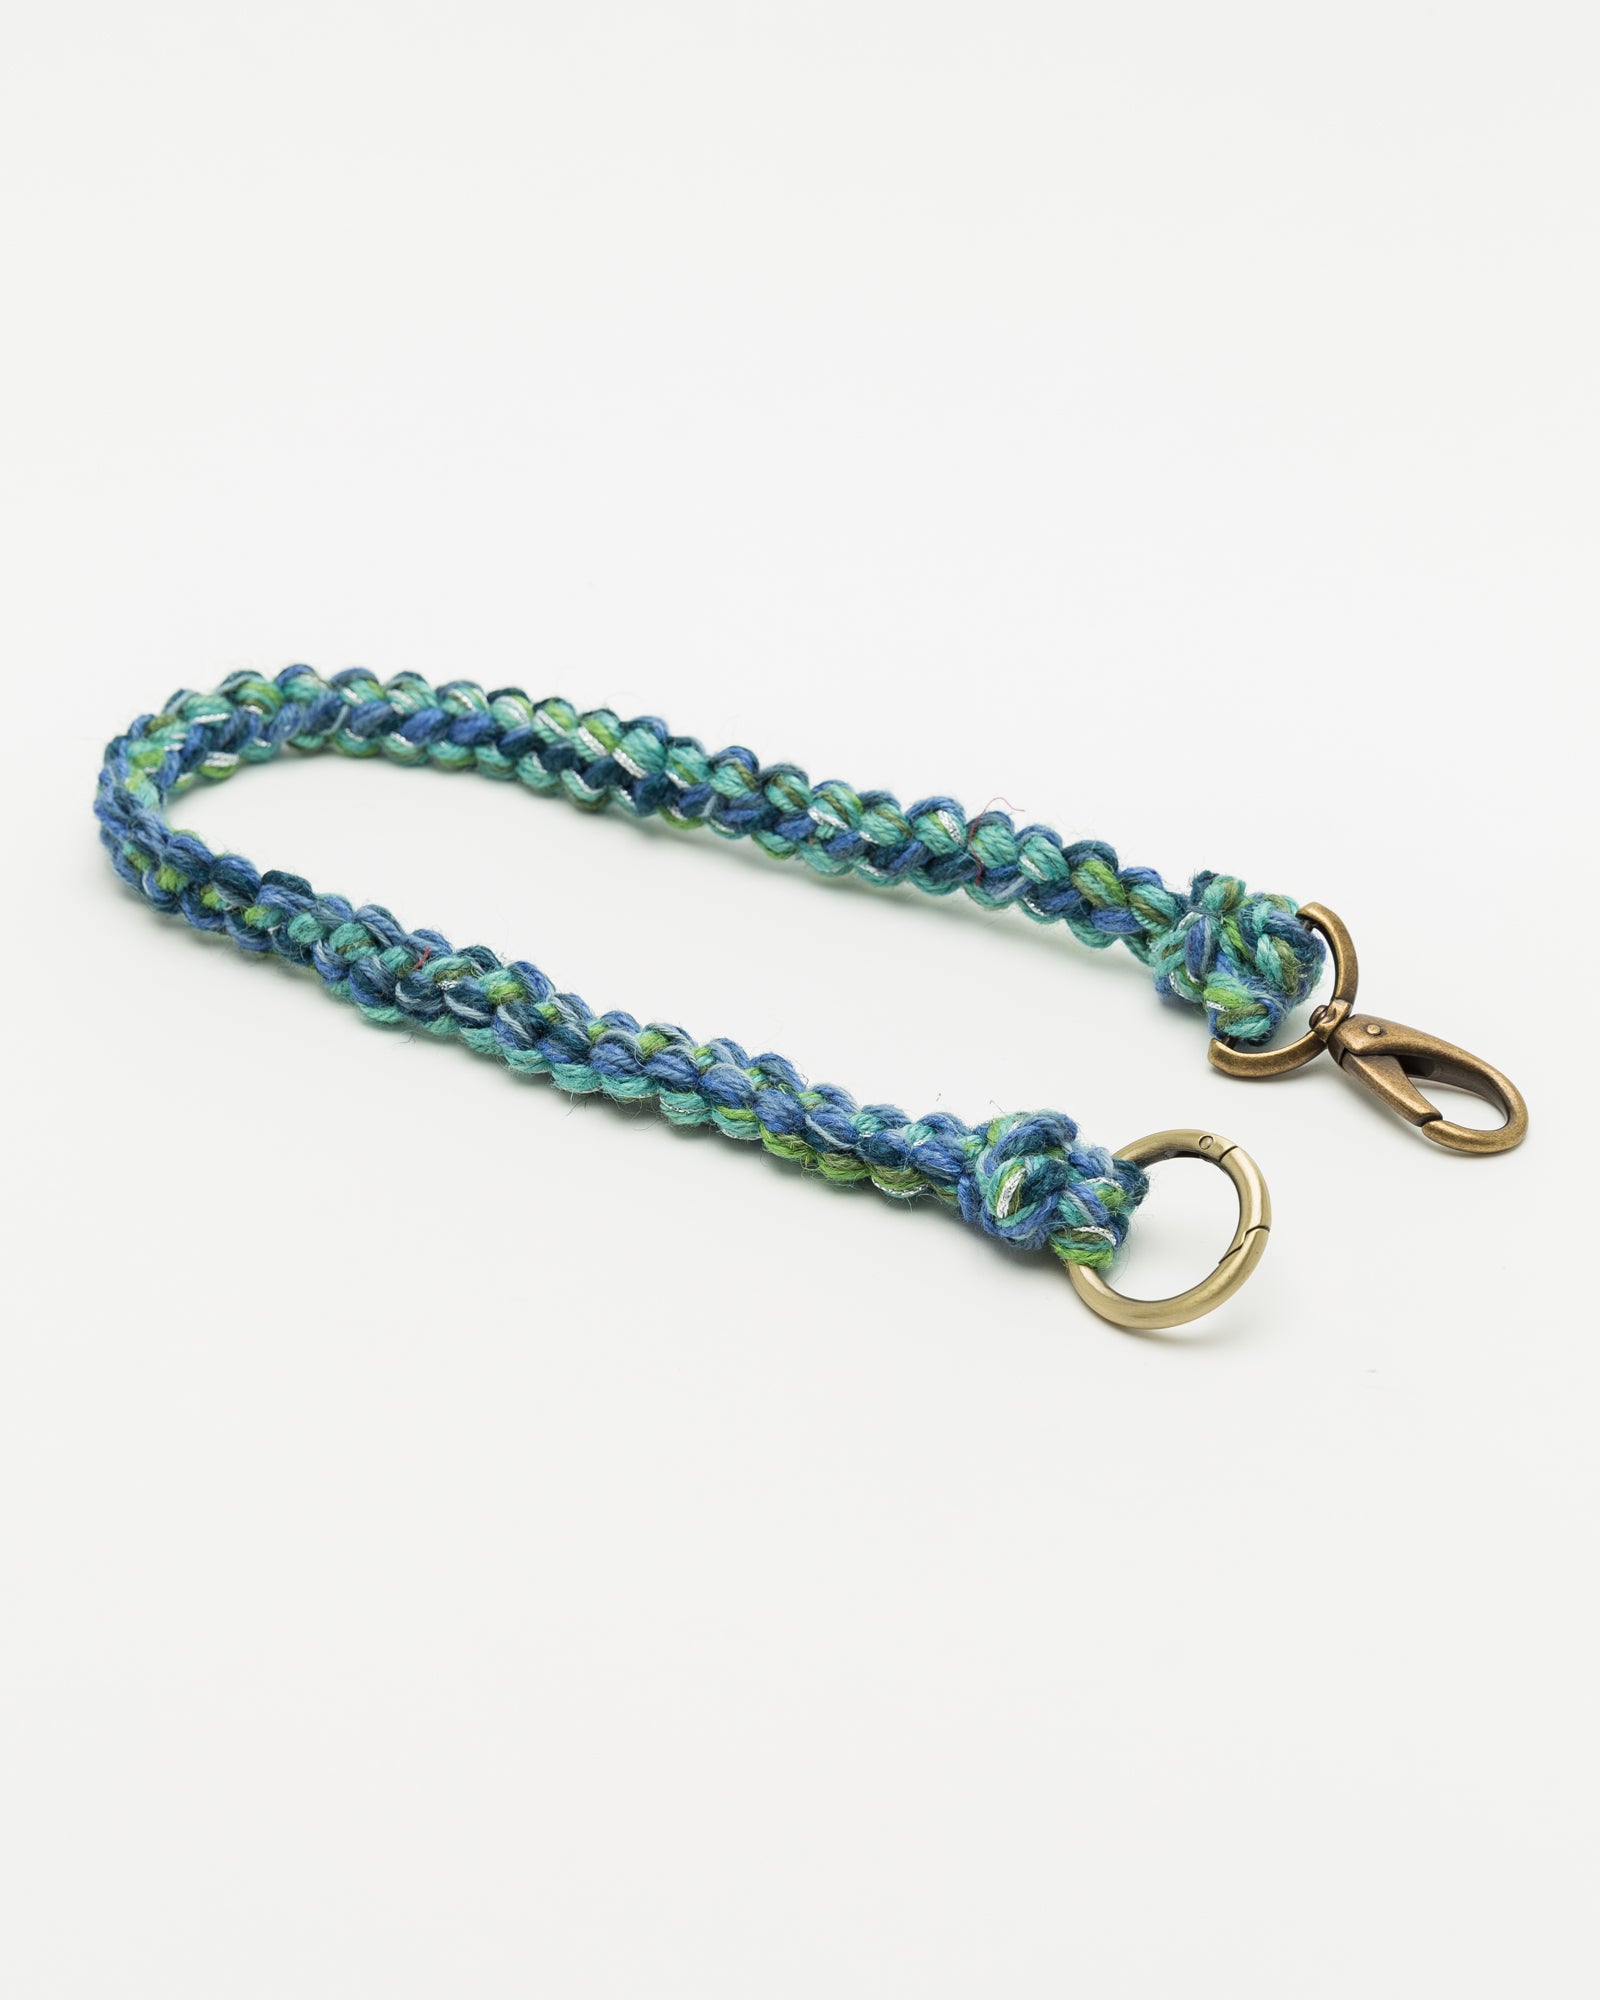 Hand Crochet Lanyard in Blue